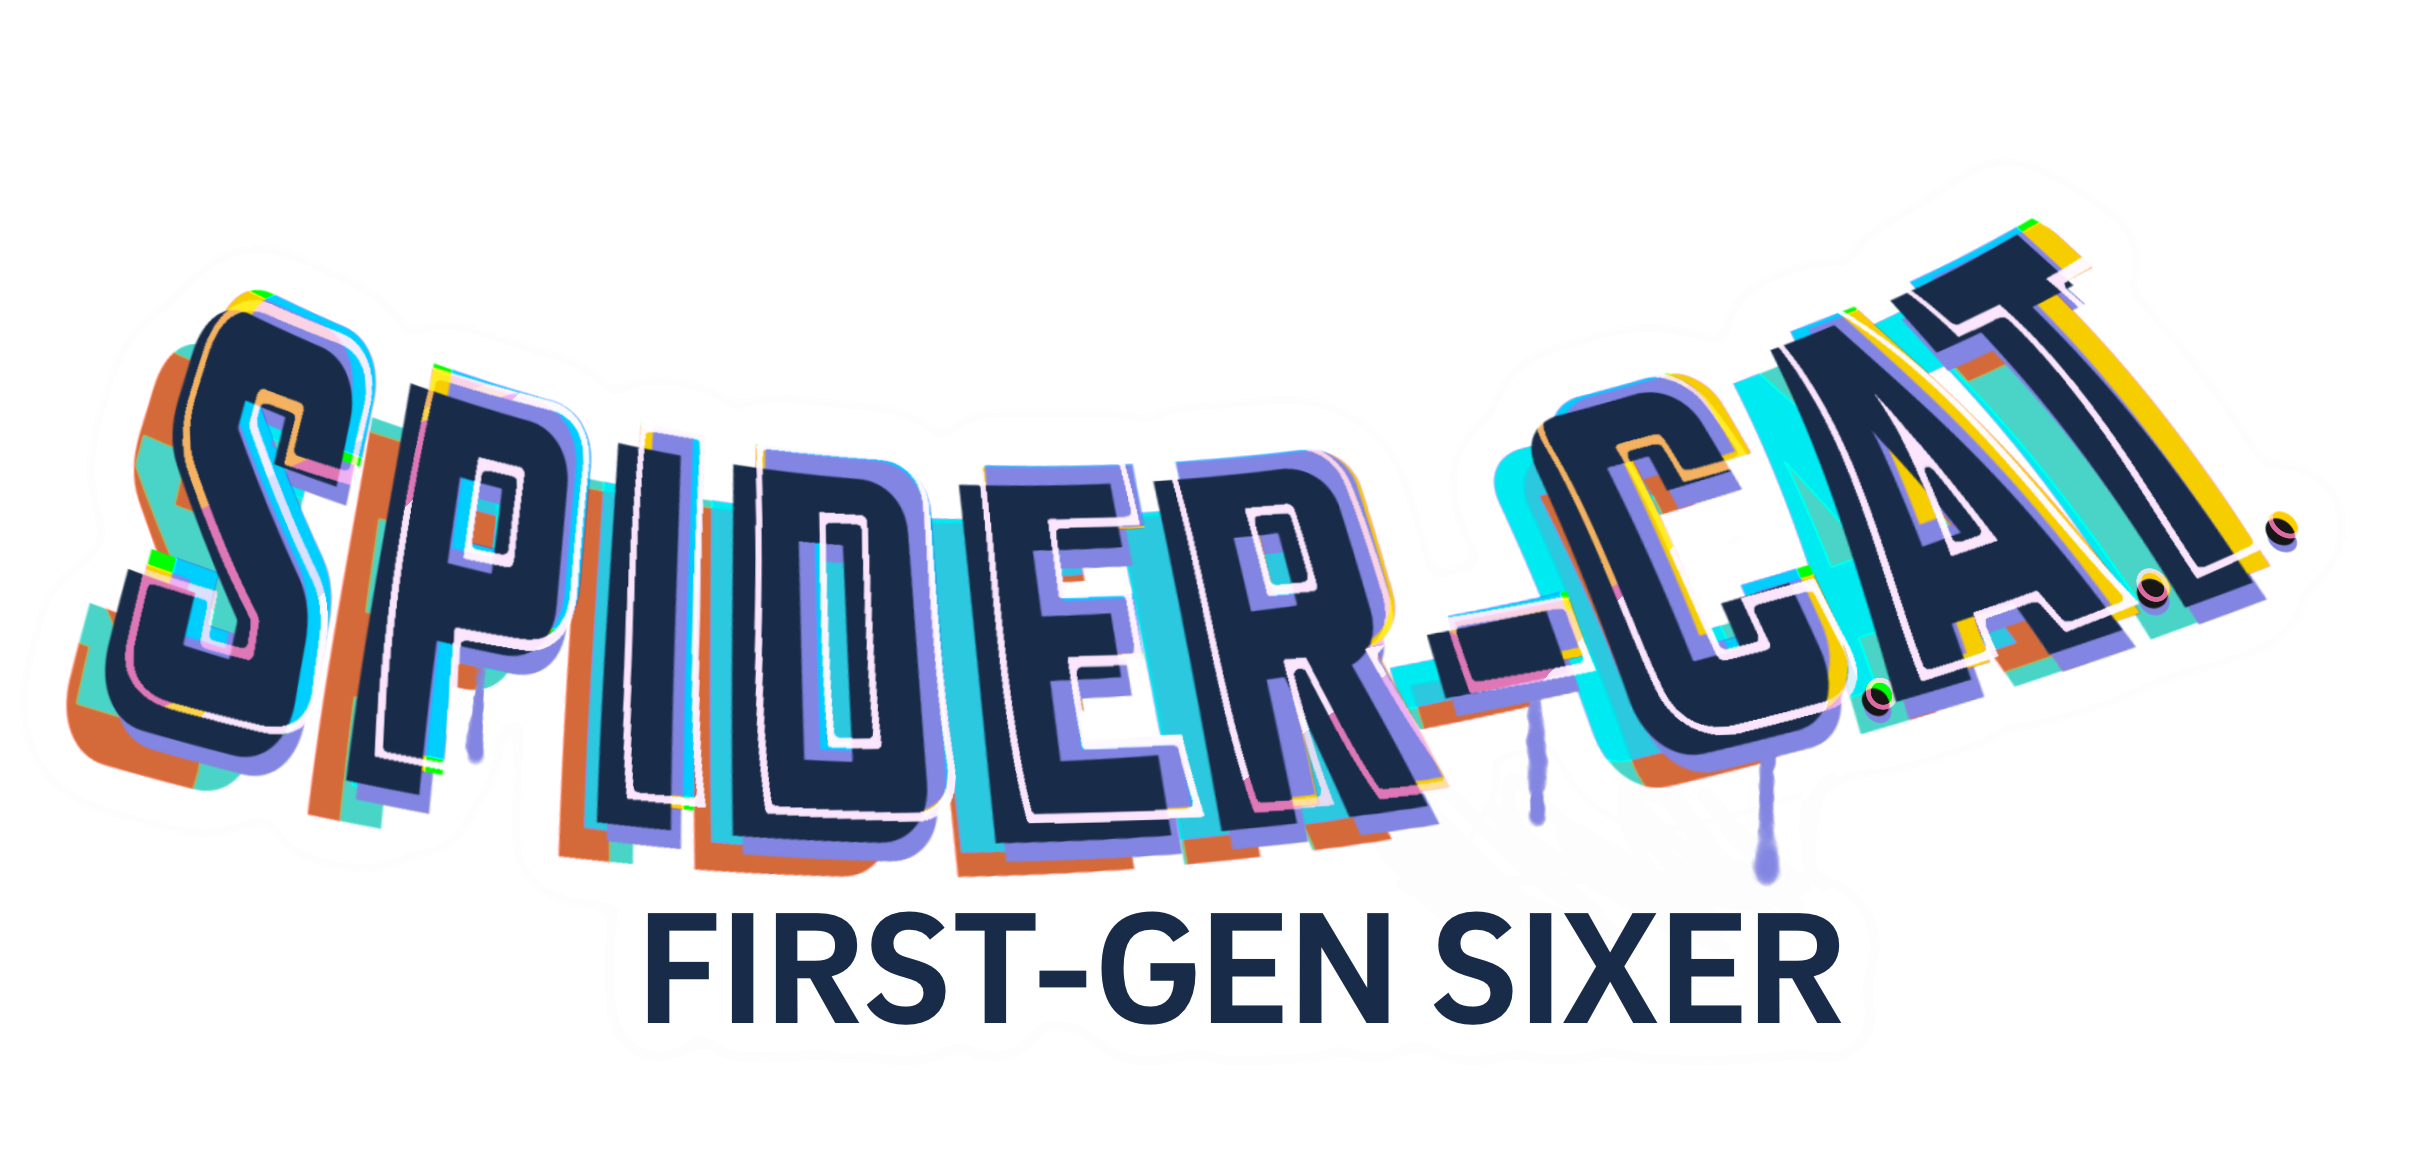 First-Gen-Spider-Cat-Logo-Sticker_left-edit2.png